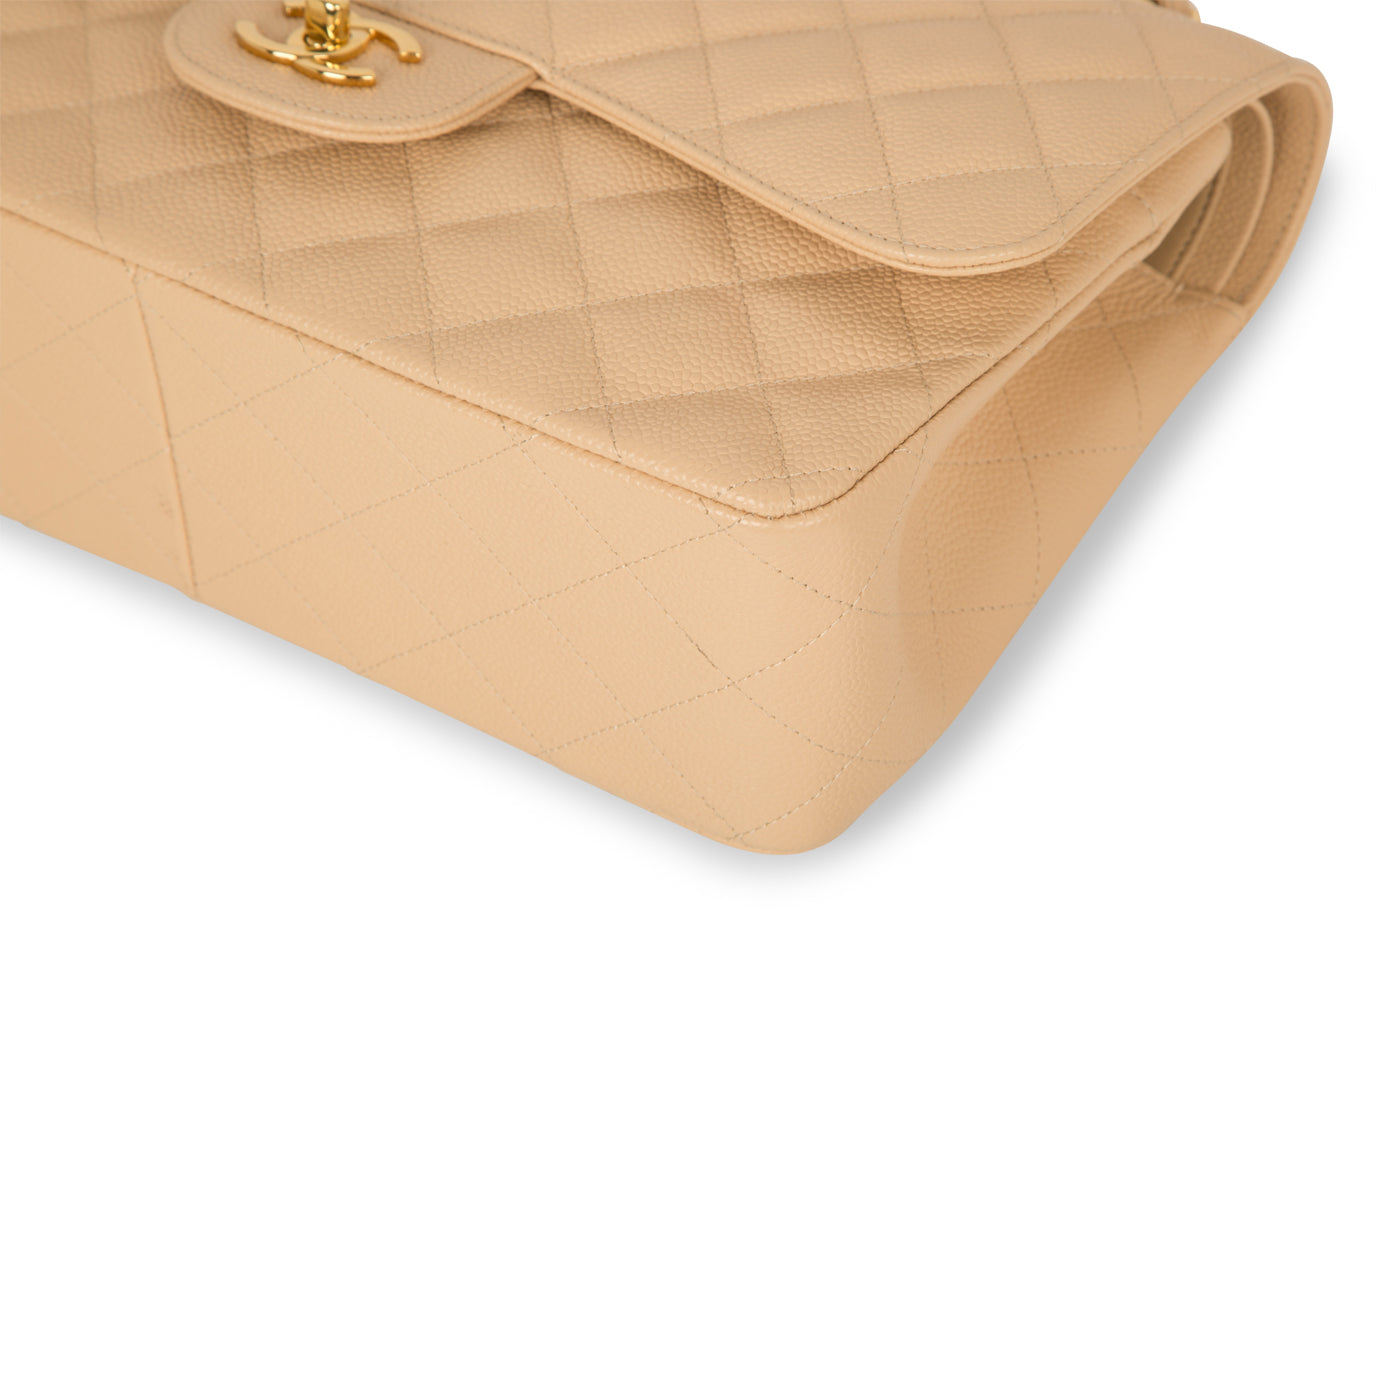 MOYNAT 24k Gold Gabrielle vs Chanel Classic Jumbo Flap Comparison & Bag  Details 